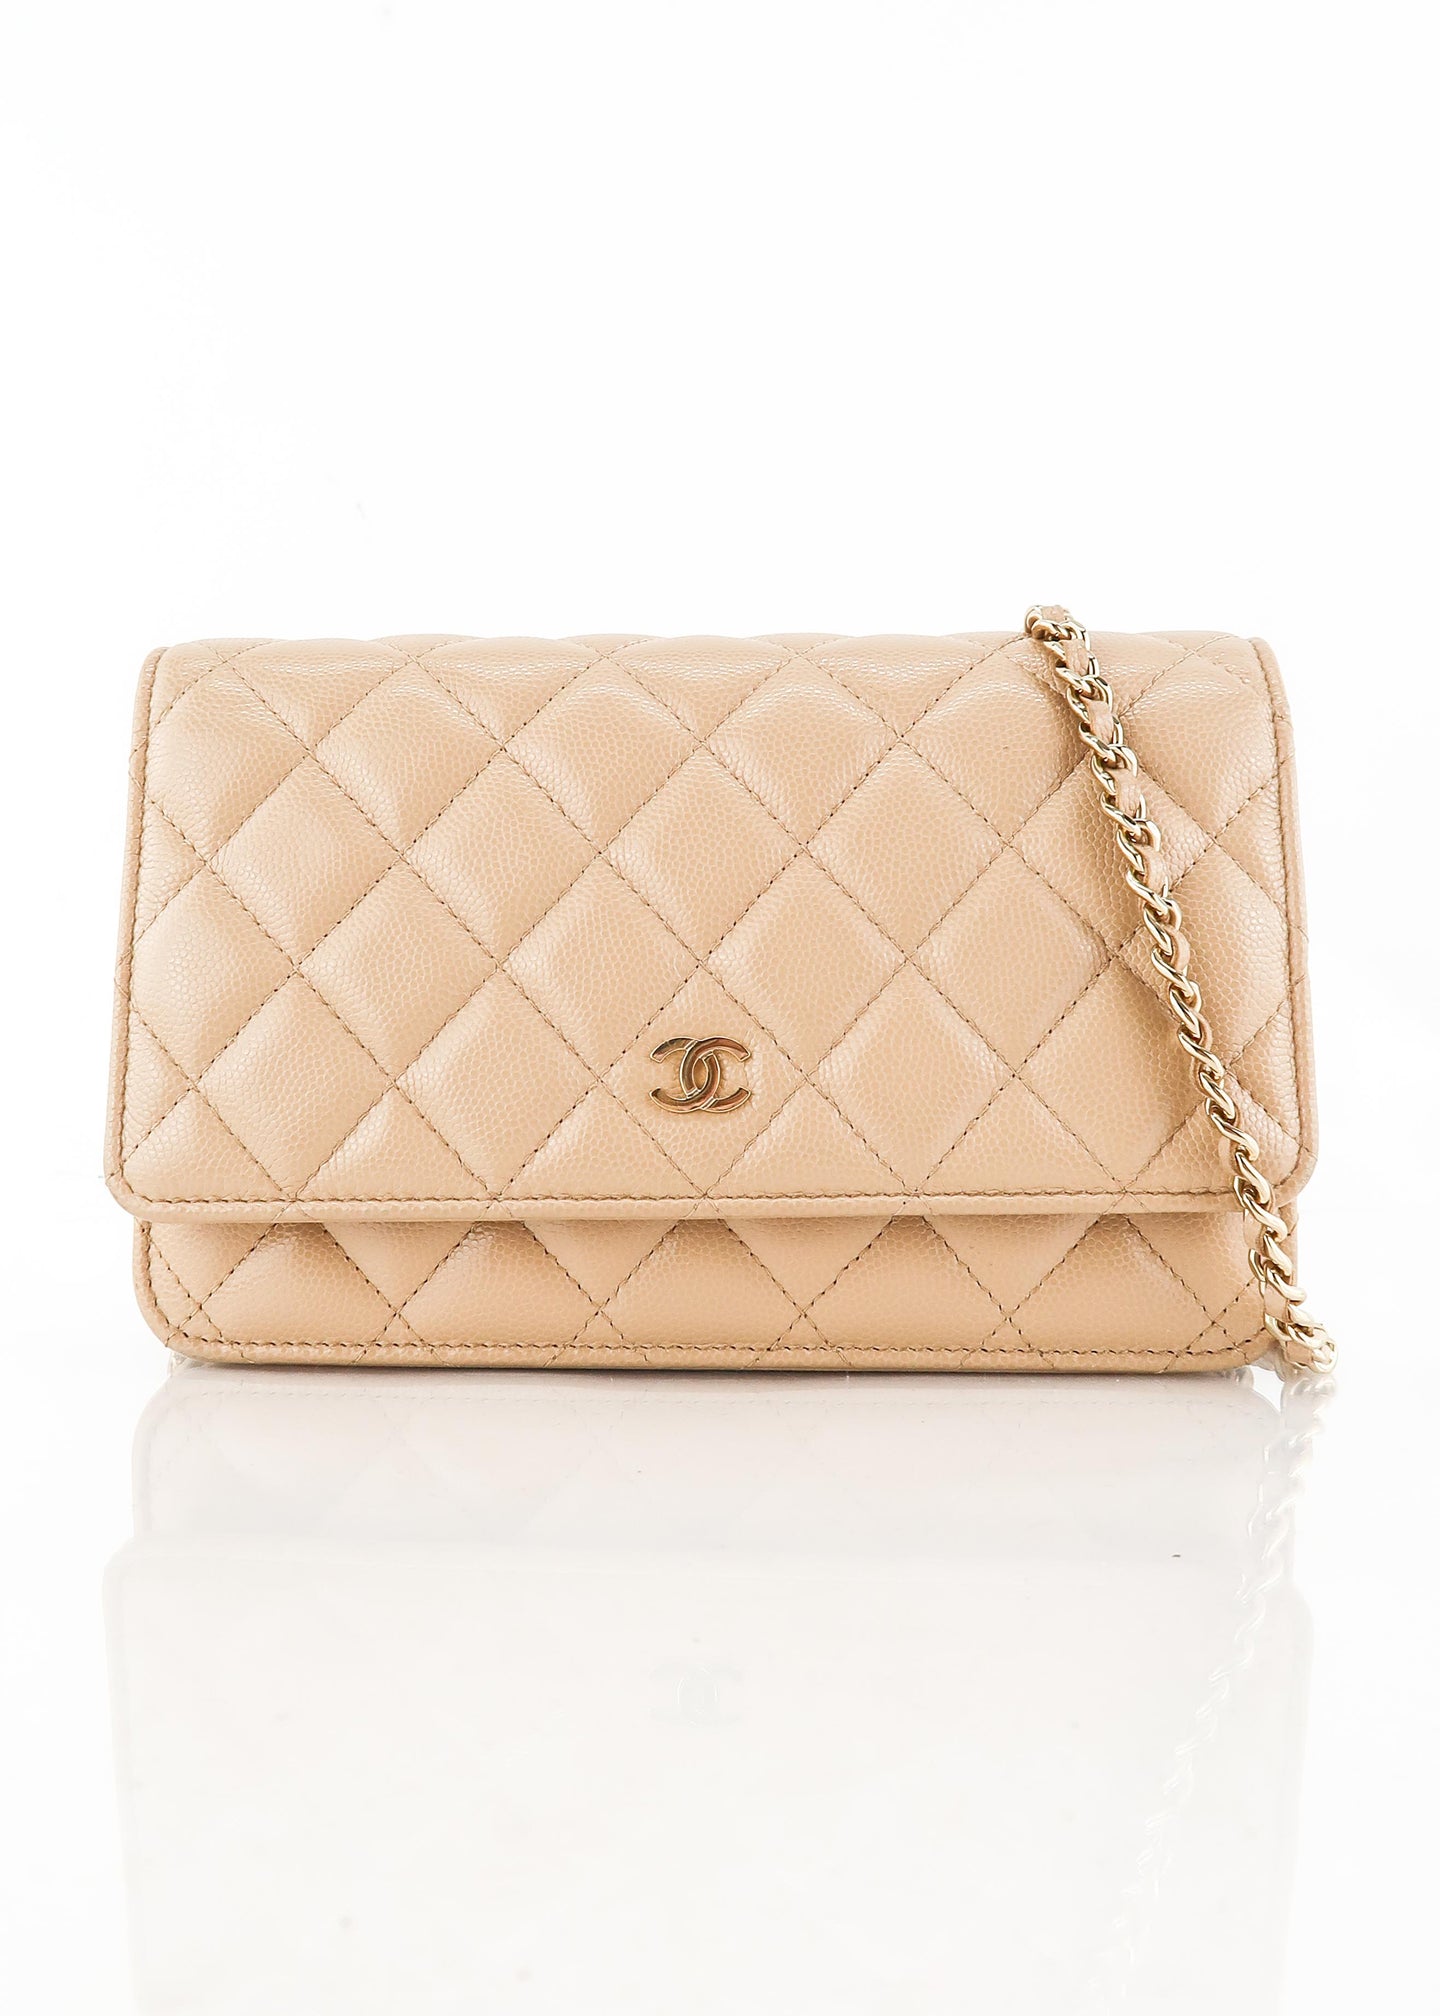 Chanel wallet on chain: Is it worth it? - Kate Waterhouse